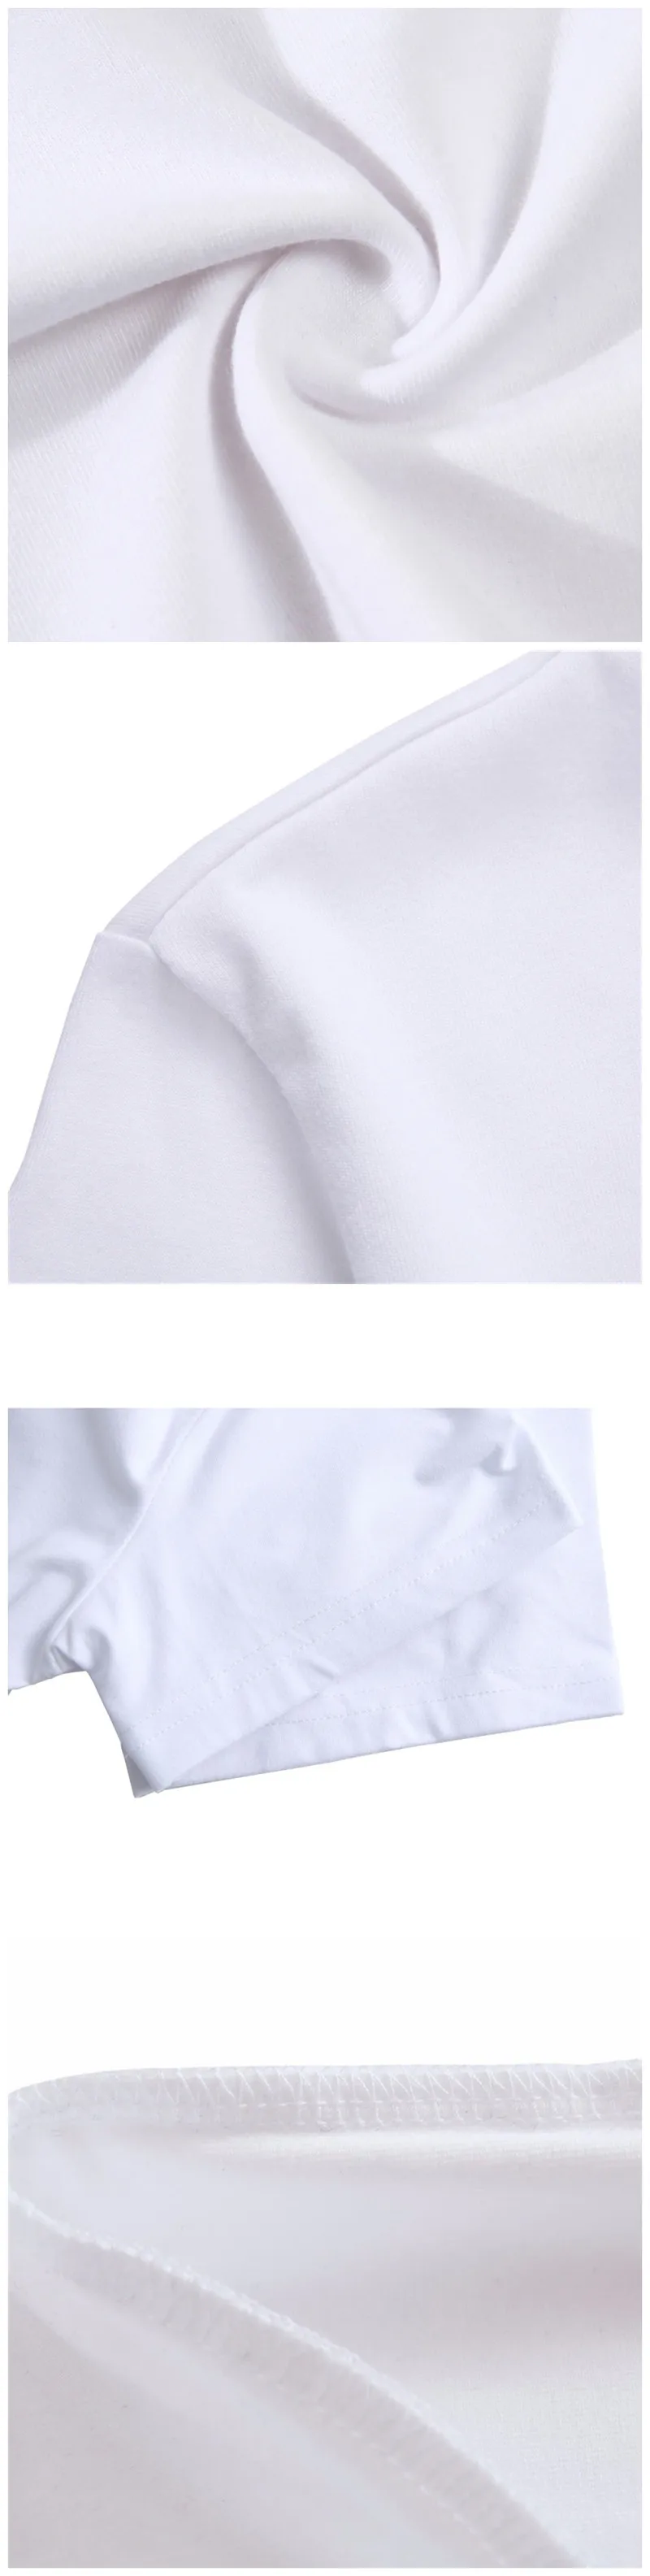 Корейская Футболка женская Милая футболка женская футболка Dumbo Женские Смешные футболки Свободный стиль Kawaii одежда большого размера Kawaii Топы